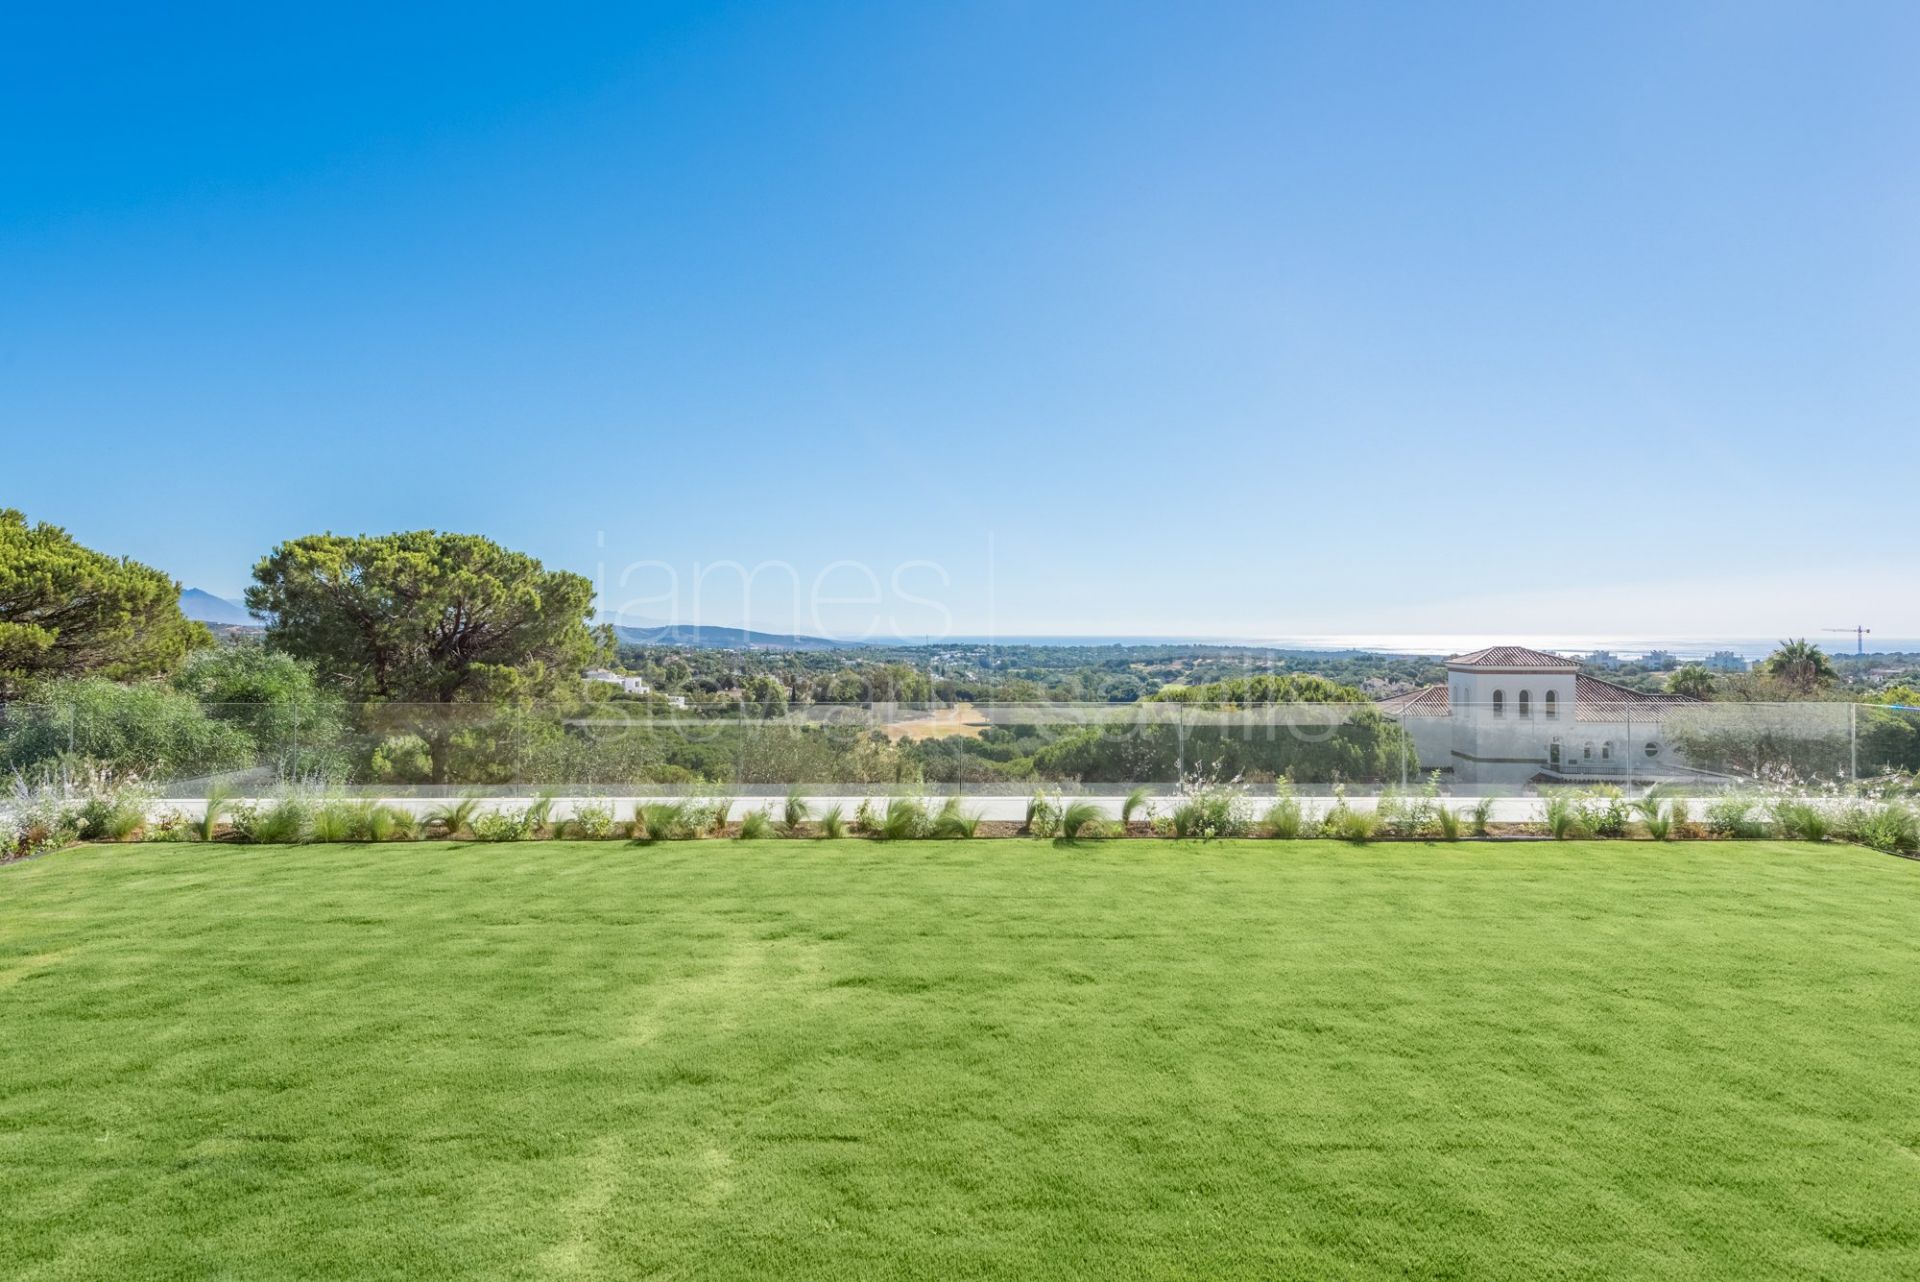 LAS ALAMANDAS - Villa a estrenar en zona Almenara, Sotogrande, con fabulosas vistas al golf y al mar